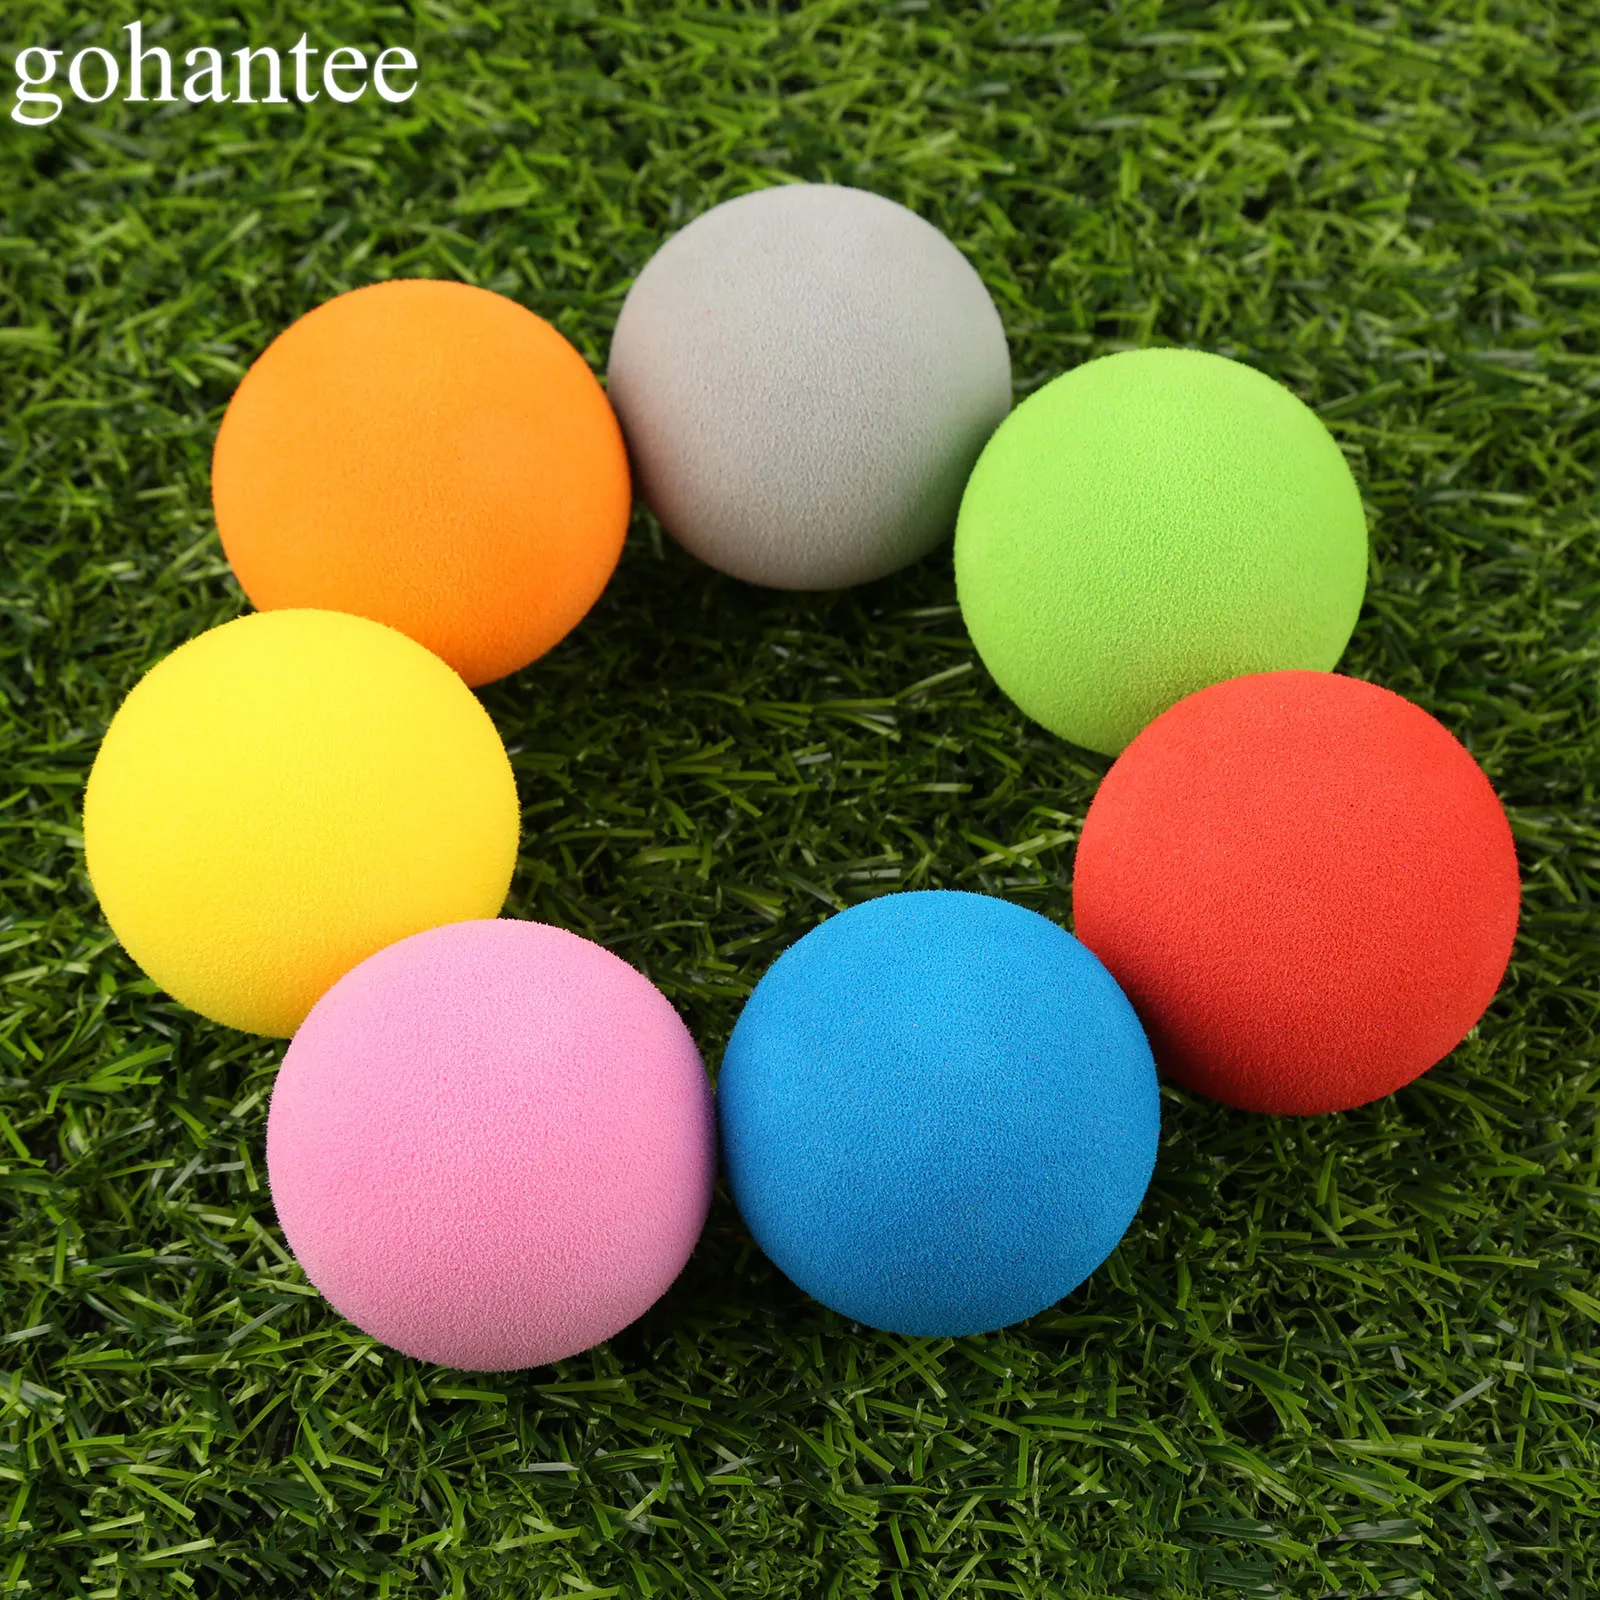 Gohantee, новинка, креативные резиновые мячи для гольфа, 6 видов шаблонов, мячи для игры в гольф, похожие на мячи для игры в регби, футбол, спорт, чемпион, мячи для гольфа